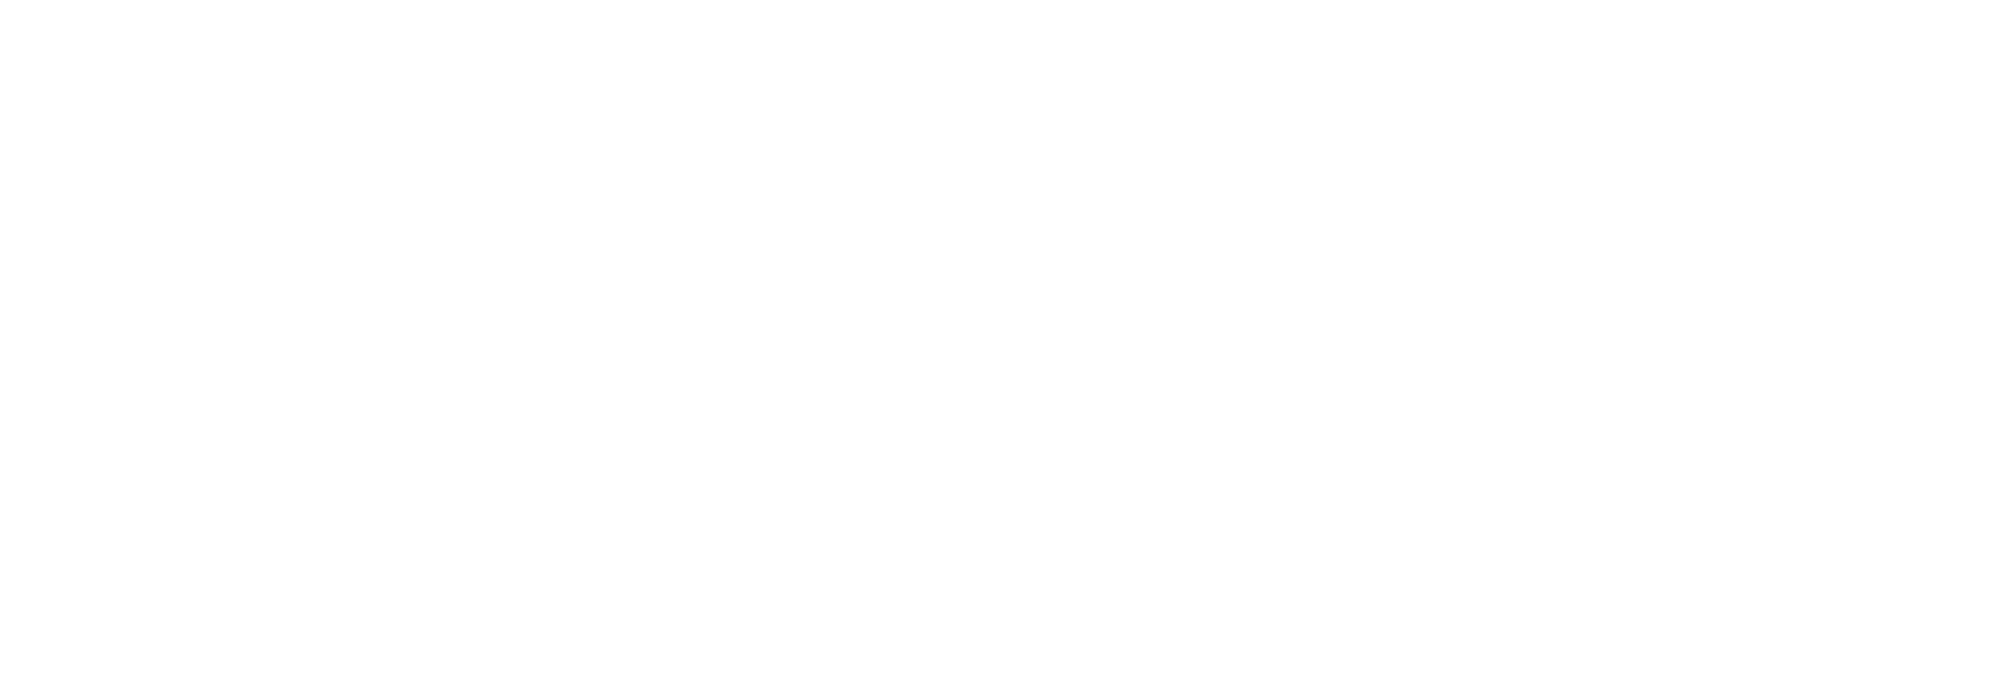 Balkan Nomads